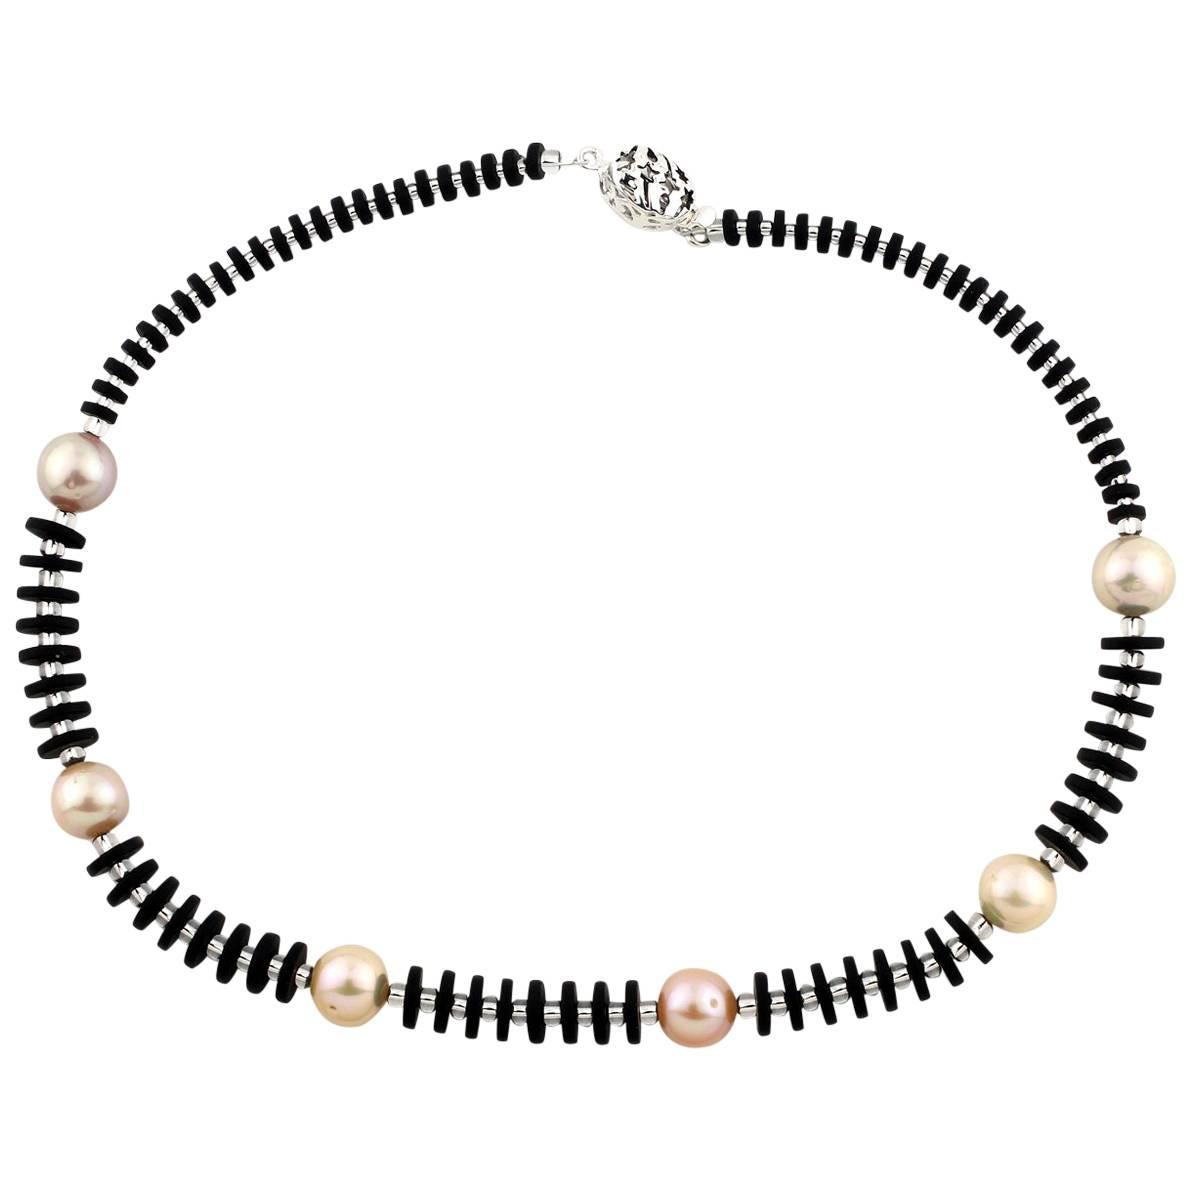 AJD Wunderschne, prchtige, elegante Halskette aus natrlichem schwarzem Onyx und pfirsichfarbener Perle